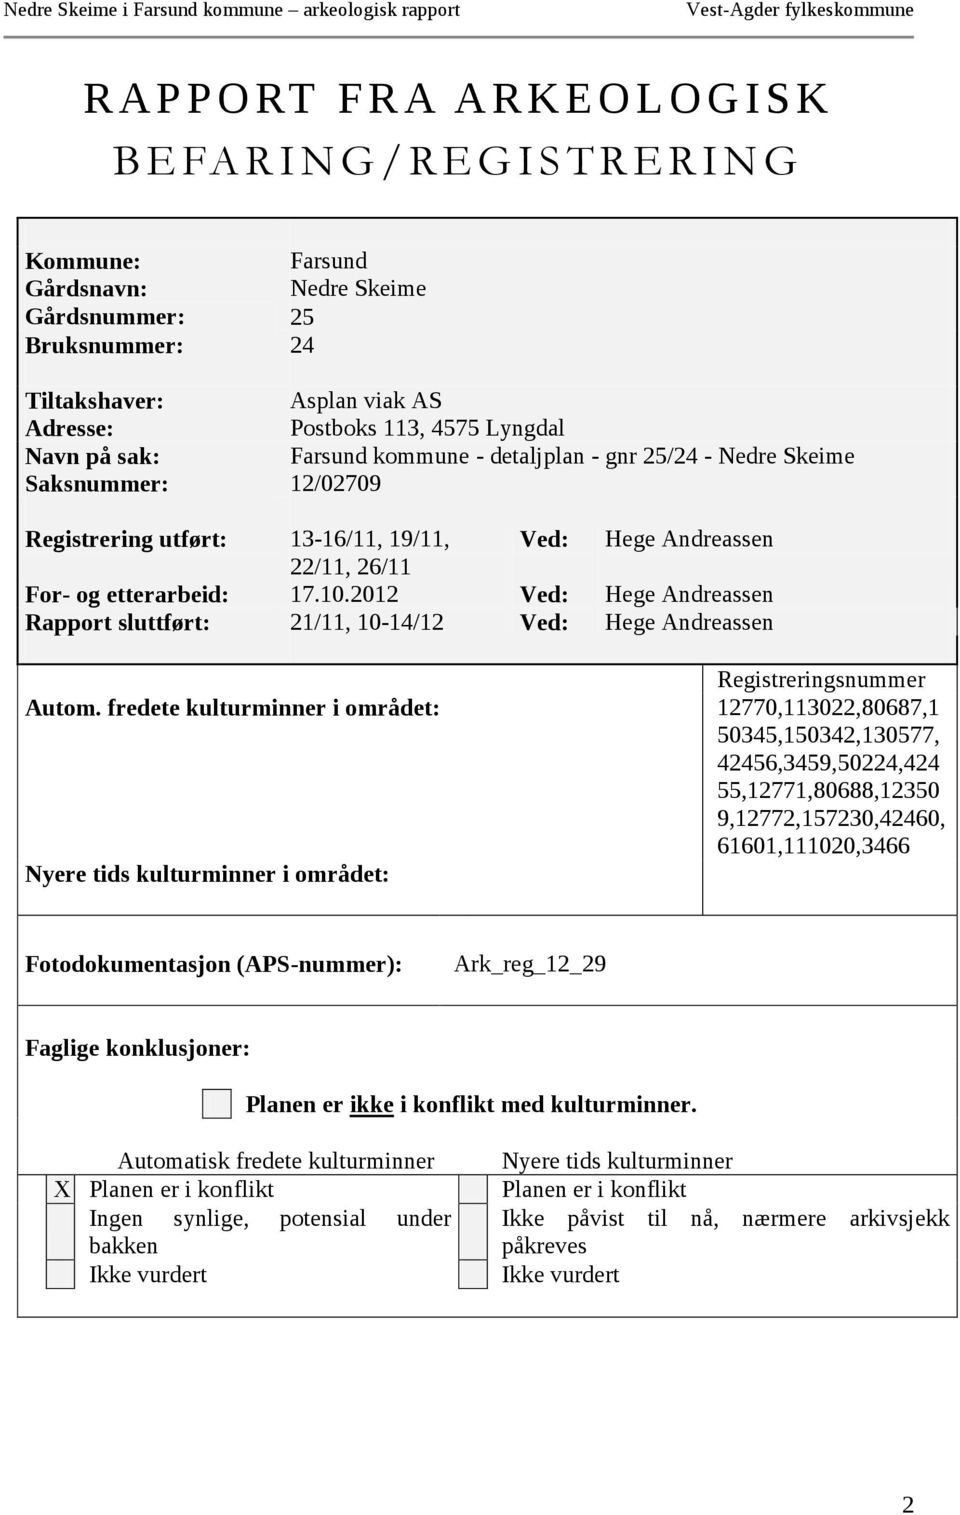 2012 Ved: Hege Andreassen Rapport sluttført: 21/11, 10-14/12 Ved: Hege Andreassen Registreringsnummer Autom.